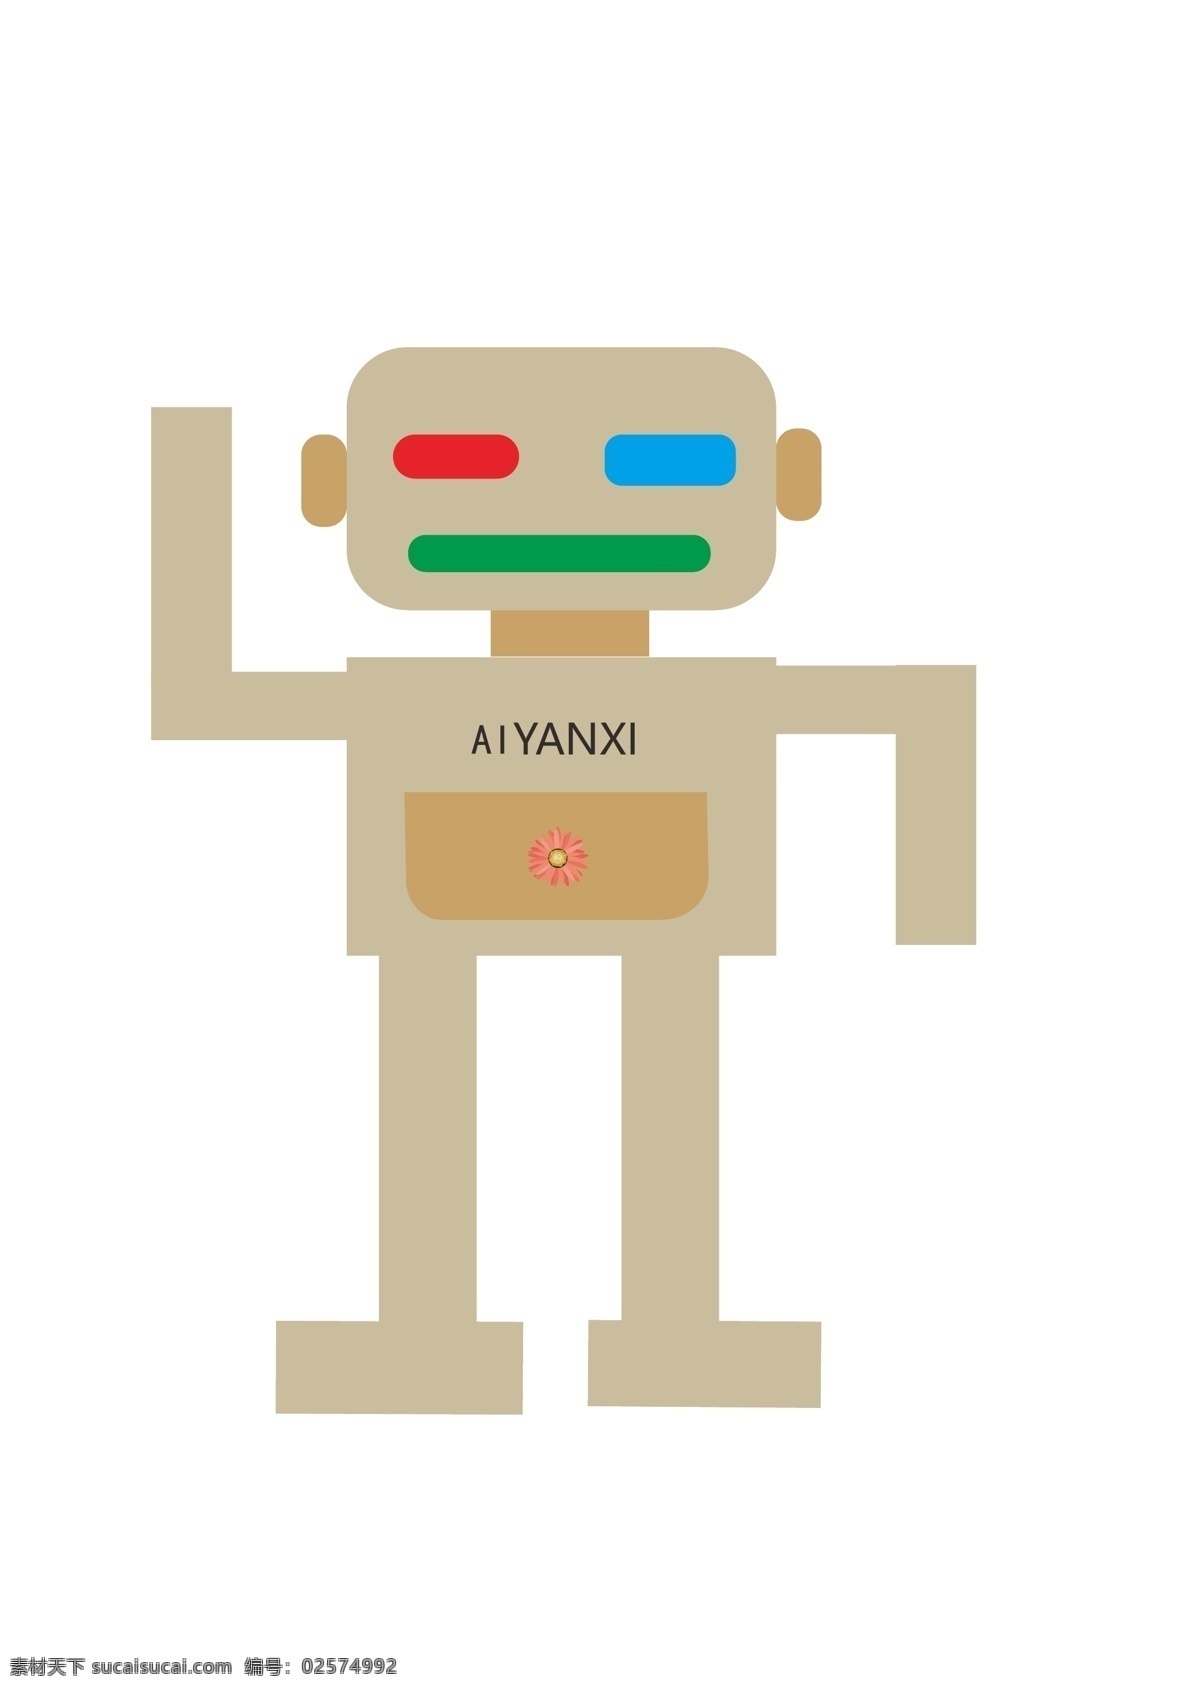 矢量机器人 ai机器人 机器人素材 机器人参考 机器人 ai设计 标志图标 其他图标